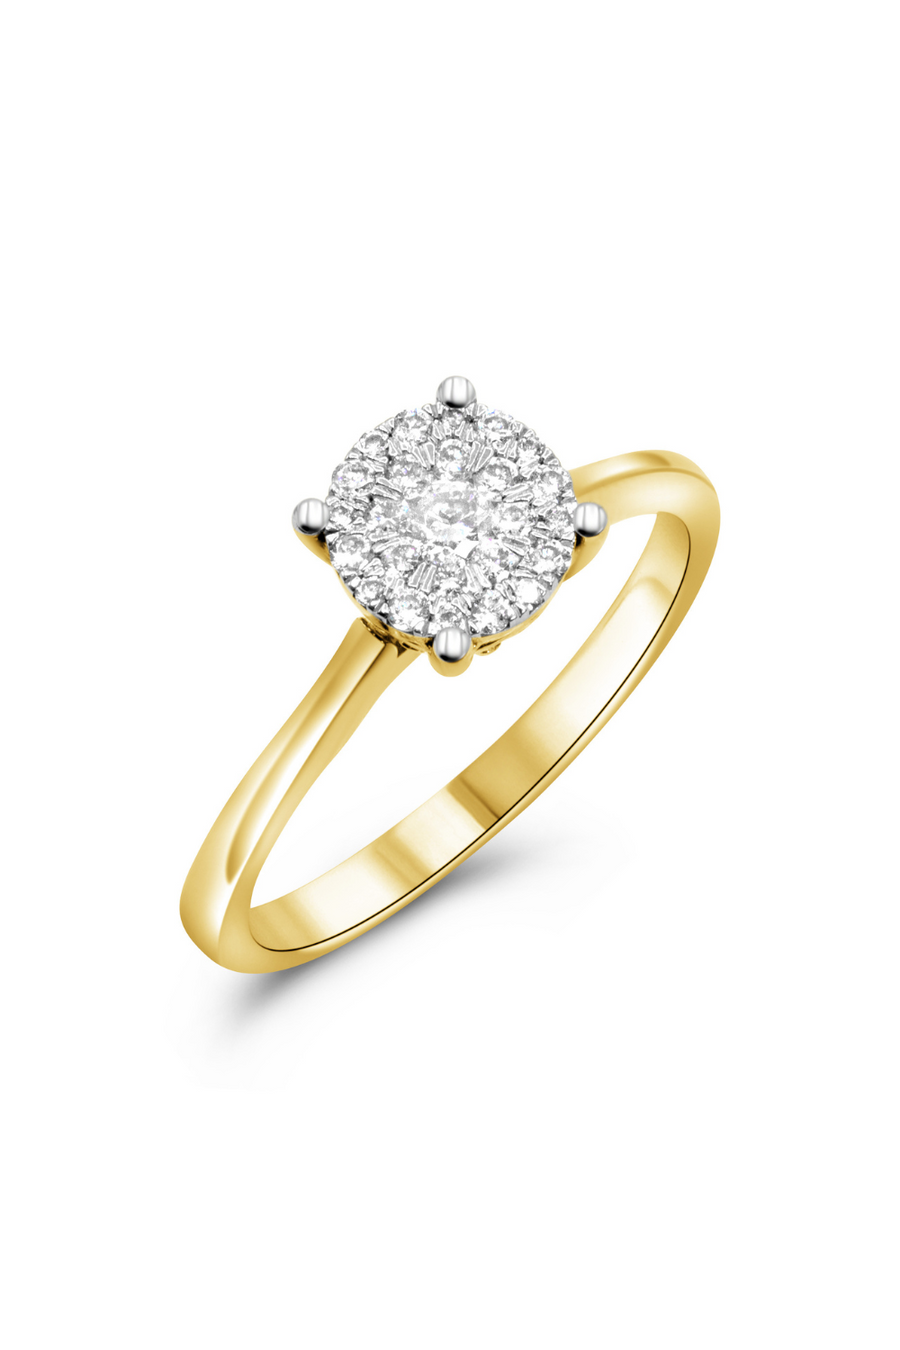 14 KARAT YELLOW GOLD CLUSTER DIAMOND RING